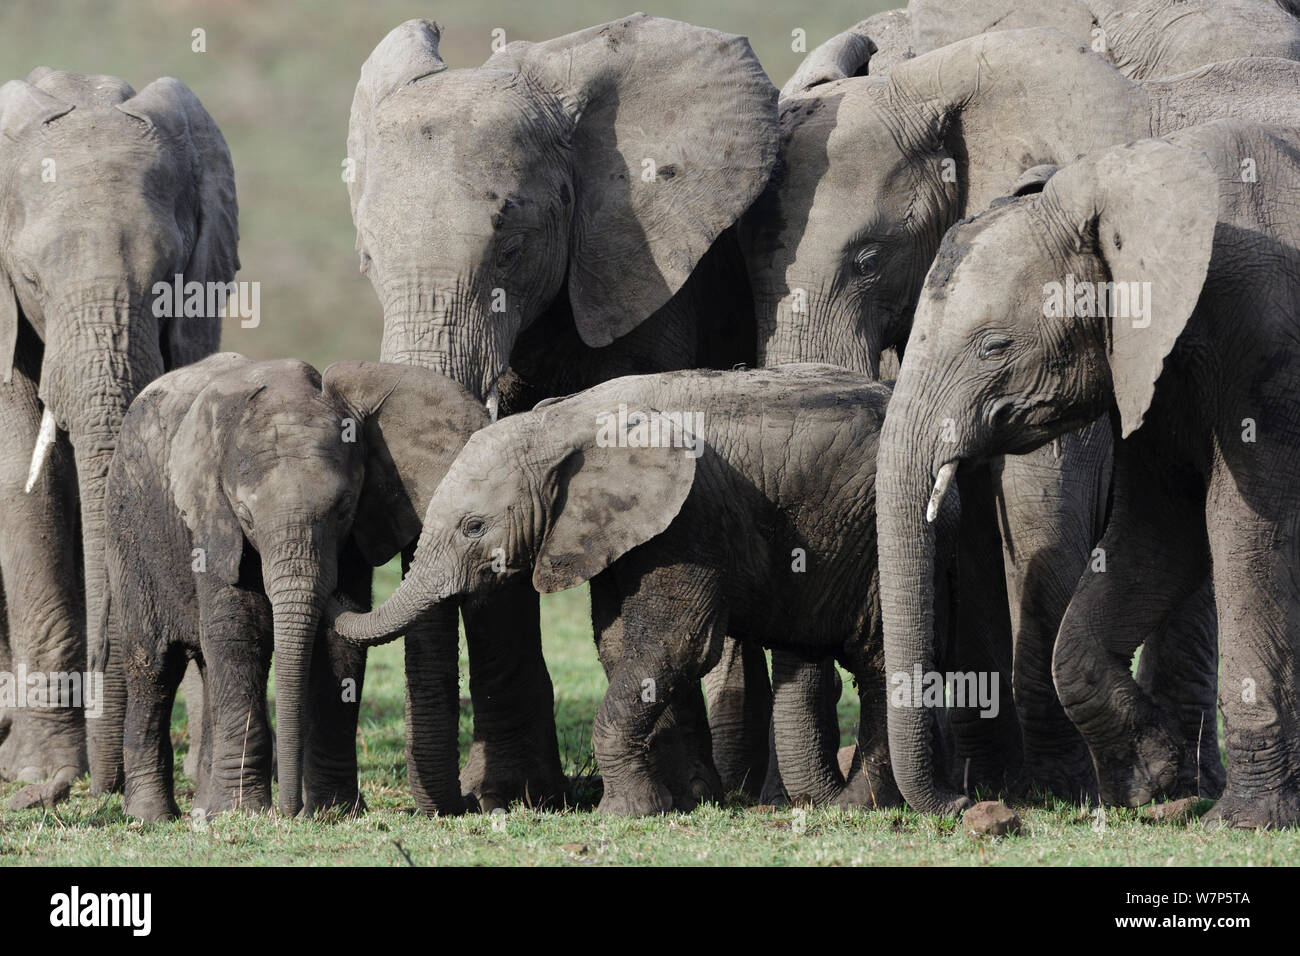 L'éléphant africain (Loxodonta africana) bébés jouant, entouré par les femelles adultes. Masai-Mara Game Reserve, Kenya. Banque D'Images